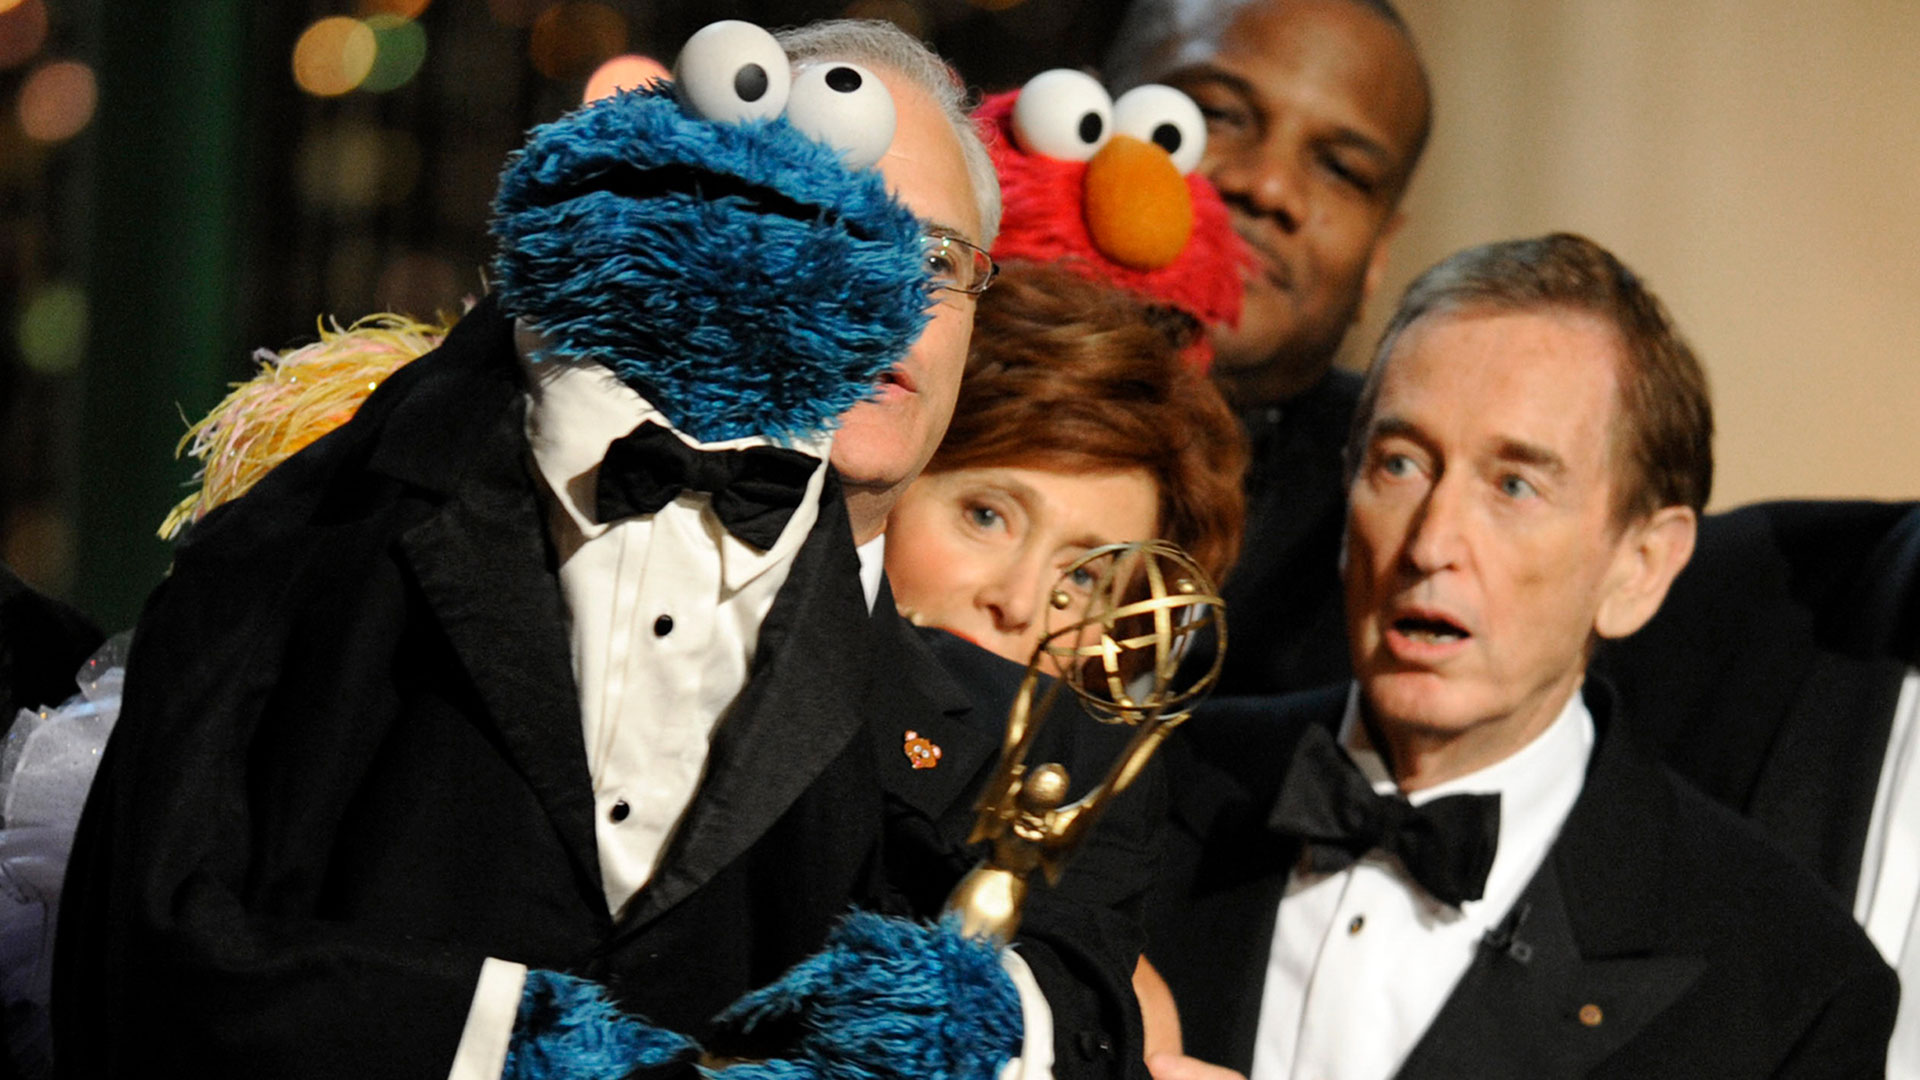 ARCHIVO - Bob McGrath, a la derecha, mira al Monstruo de las Galletas cuando aceptan el premio Lifetime Achievement Award por '"Sesame Street" en los Daytime Emmy Awards el 30 de agosto de 2009 en Los Ángeles. (Foto AP/Chris Pizzello, Archivo)

